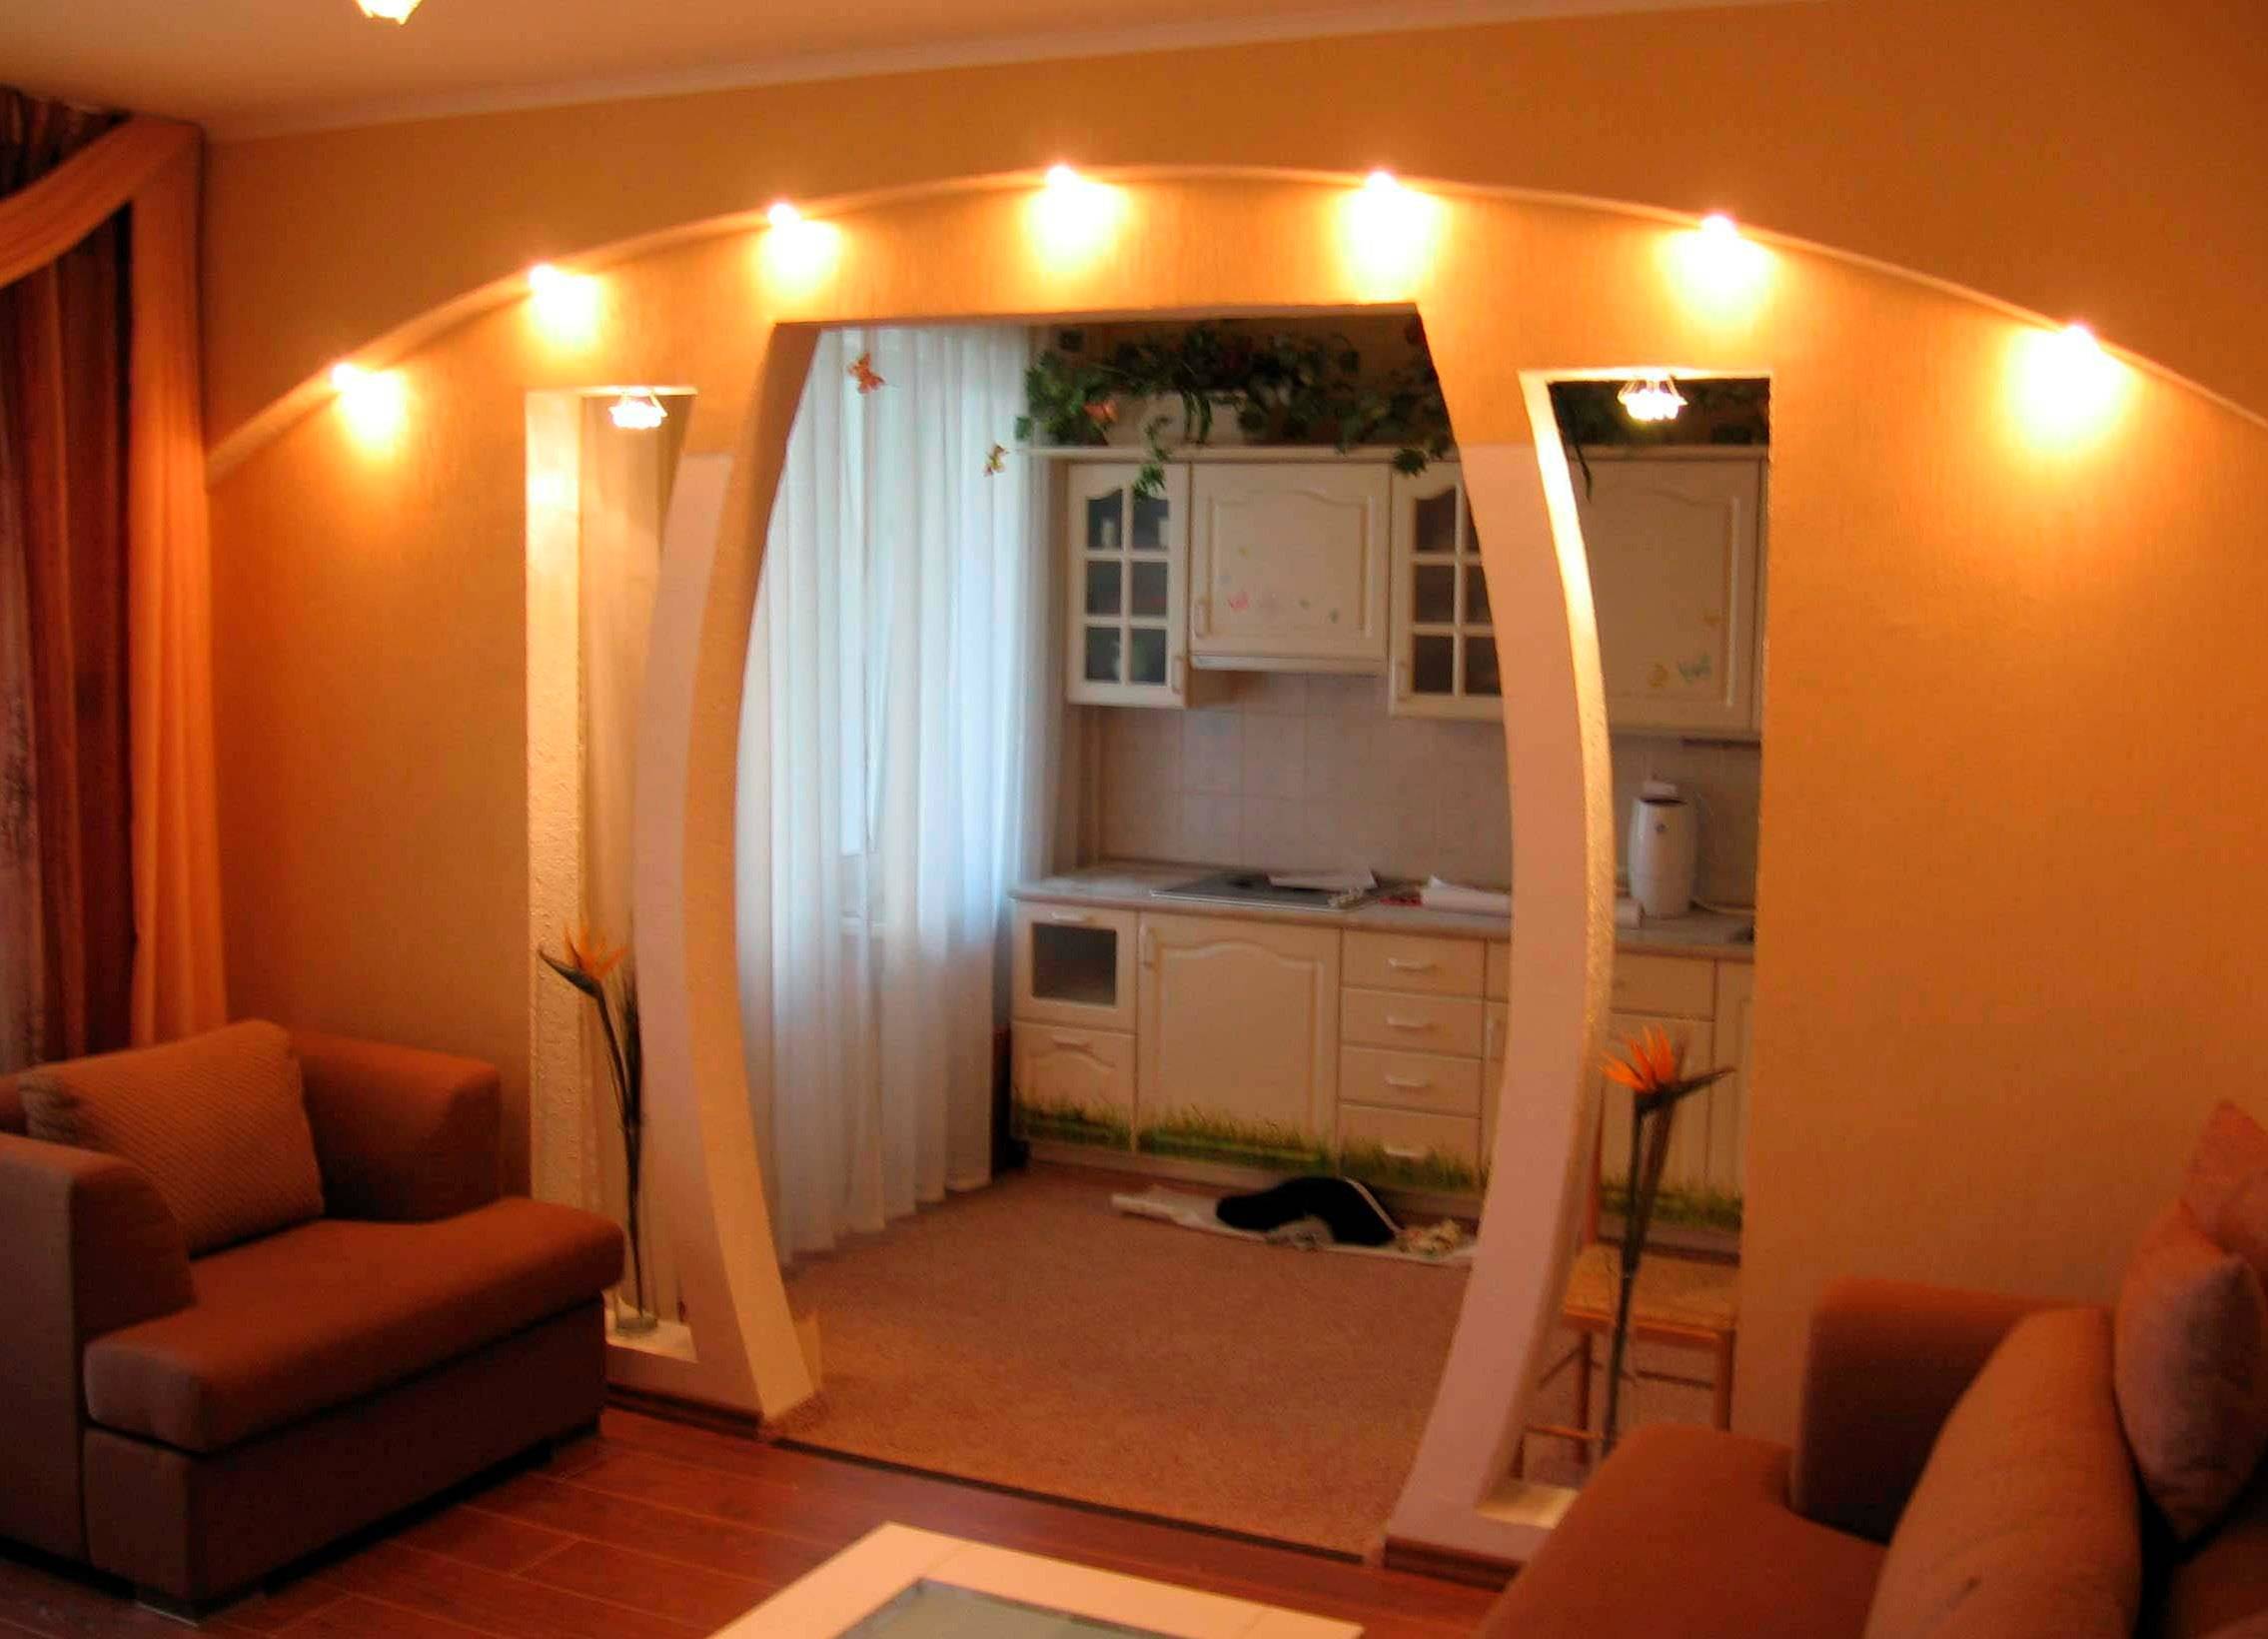 кухня с аркой в гостиную дизайн